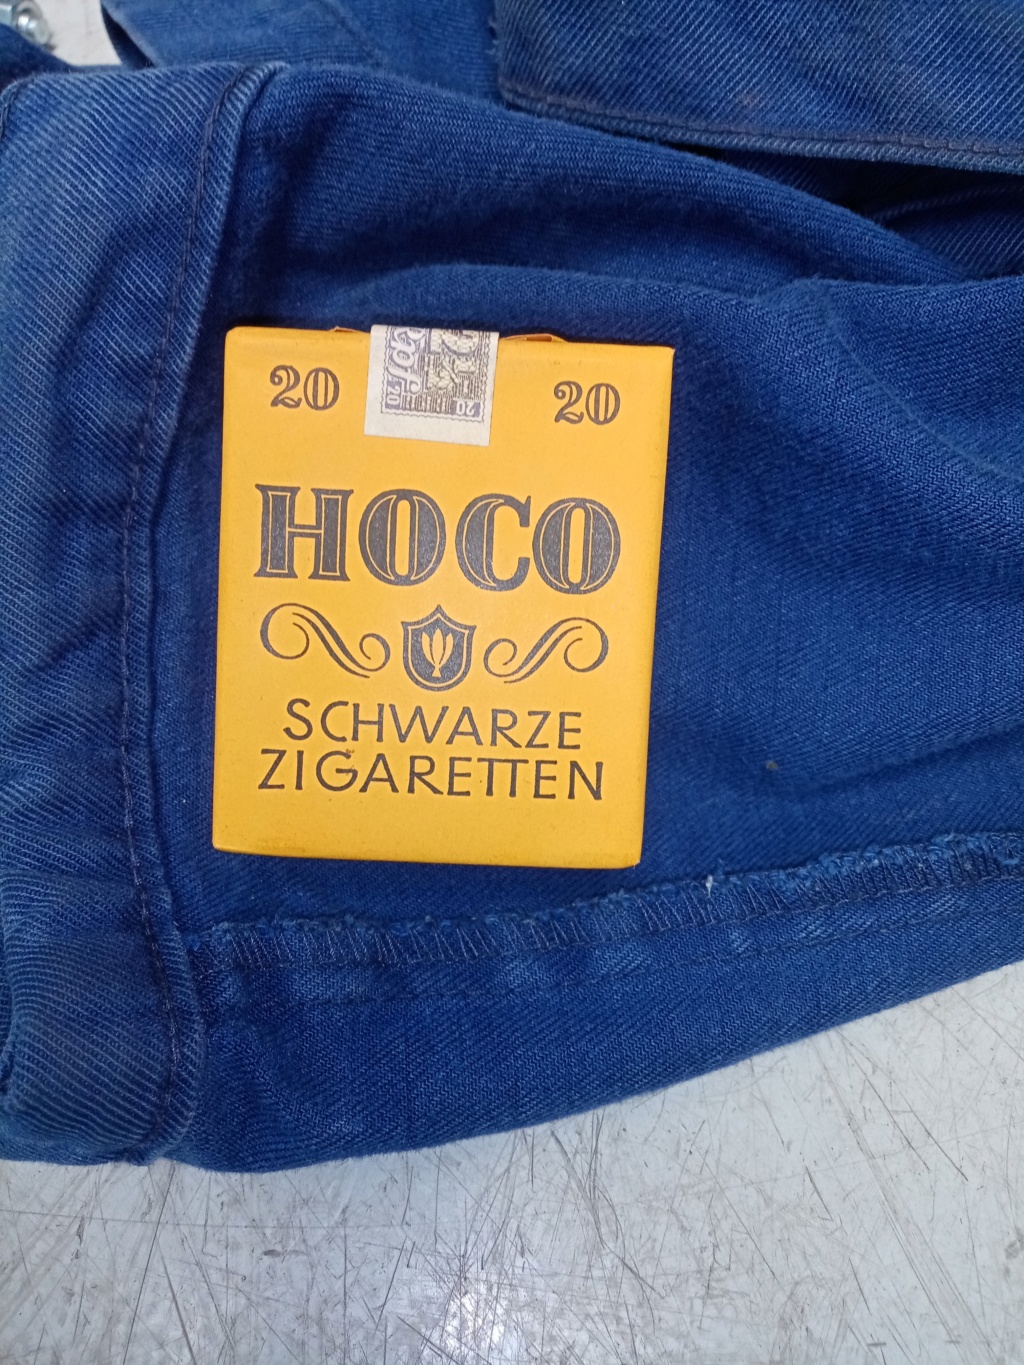 Paquet de cigarette allemand  Img_2049